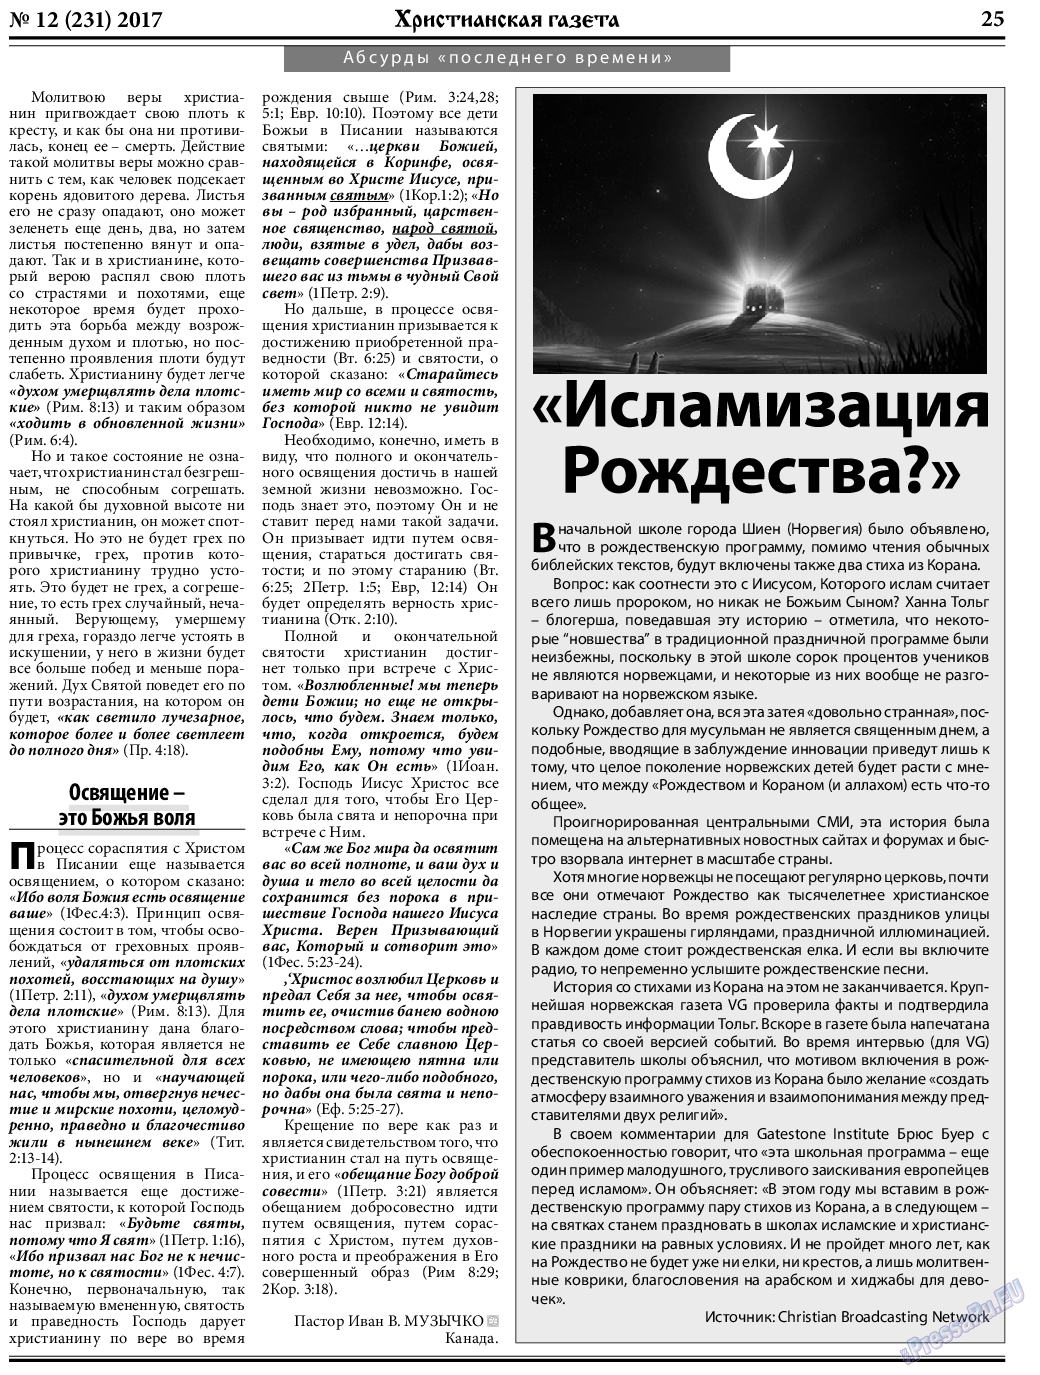 Христианская газета, газета. 2017 №12 стр.25